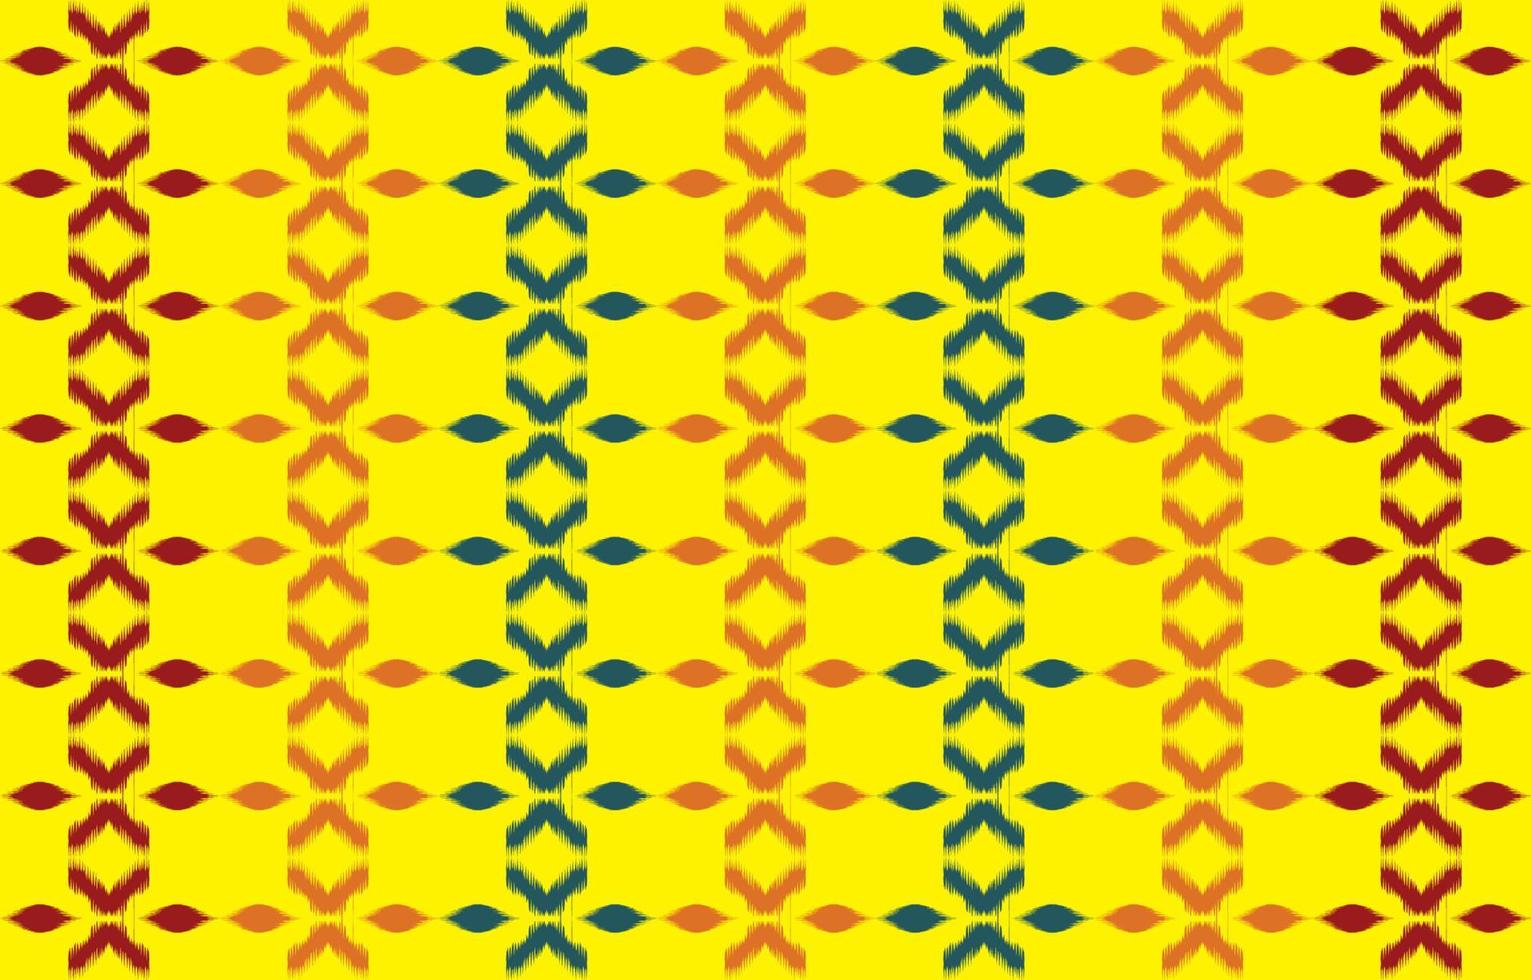 etnisk abstrakt gul. sömlösa mönster i tribal, folklig broderi och mexikansk stil. Aztekisk geometrisk konst prydnadstryck.design för matta, tapeter, kläder, omslag, tyg, omslag, textil vektor